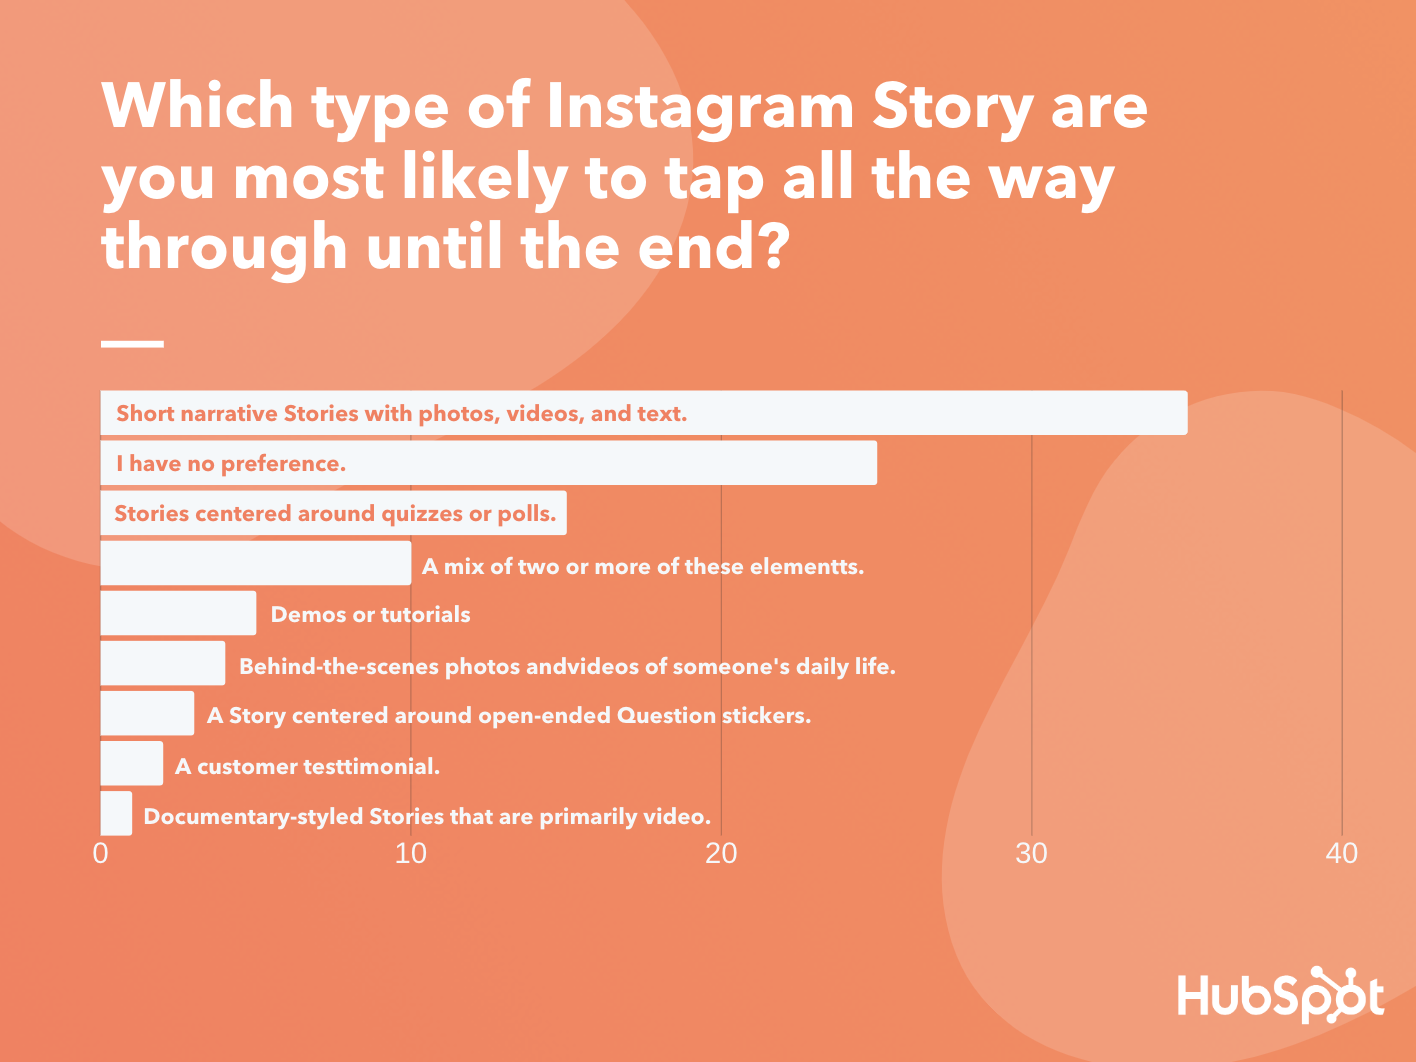 Statistiche di marketing dei contenuti visivi: un grafico che classifica i tipi di utenti di Instagram Story che hanno maggiori probabilità di toccare dall'inizio alla fine.